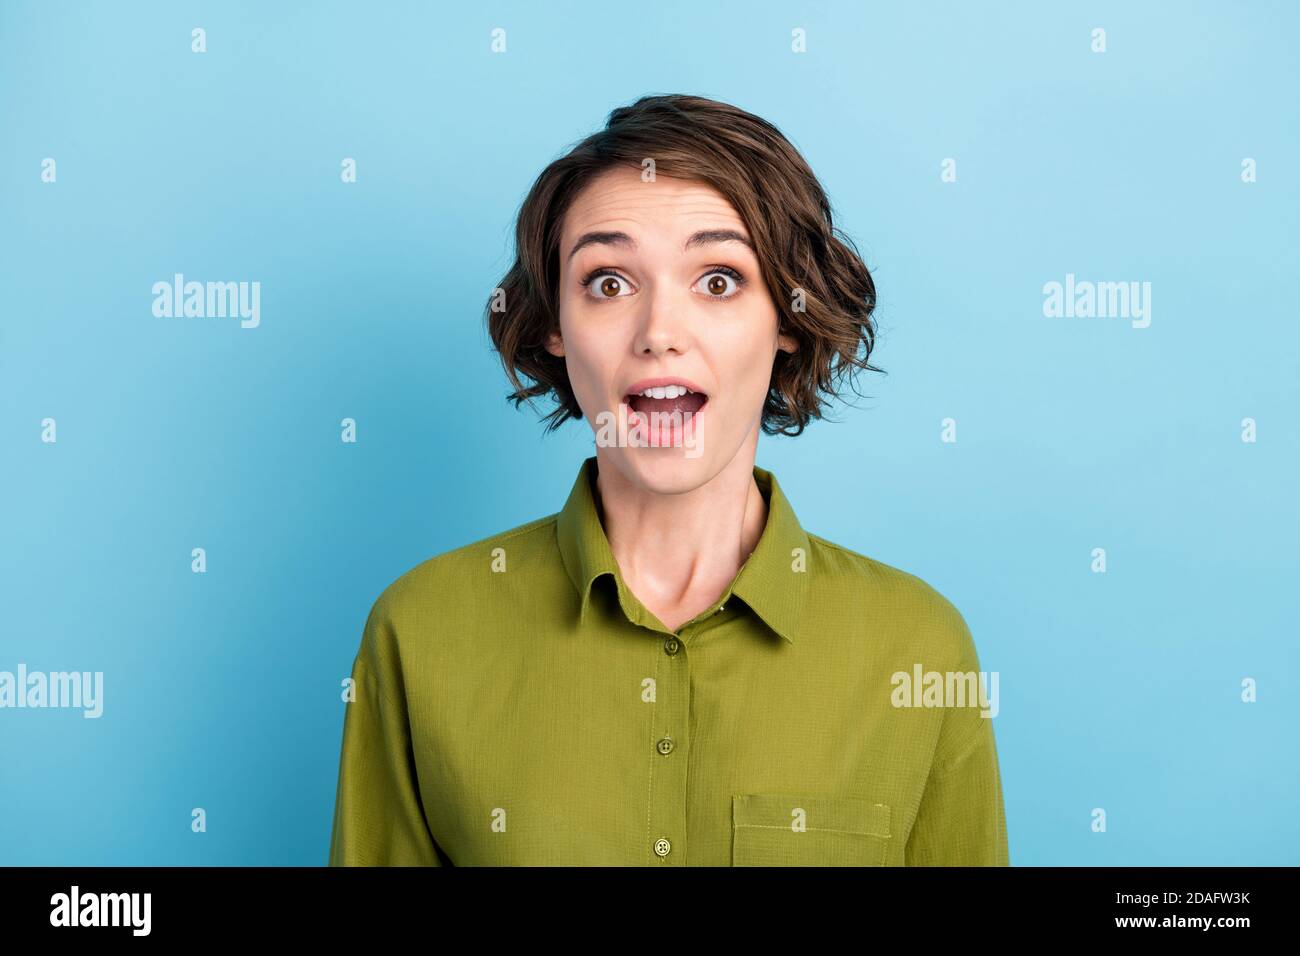 Ritratto fotografico di una giovane donna sorpresa e scioccata che indossa abiti starring con bocca aperta isolata su sfondo blu Foto Stock